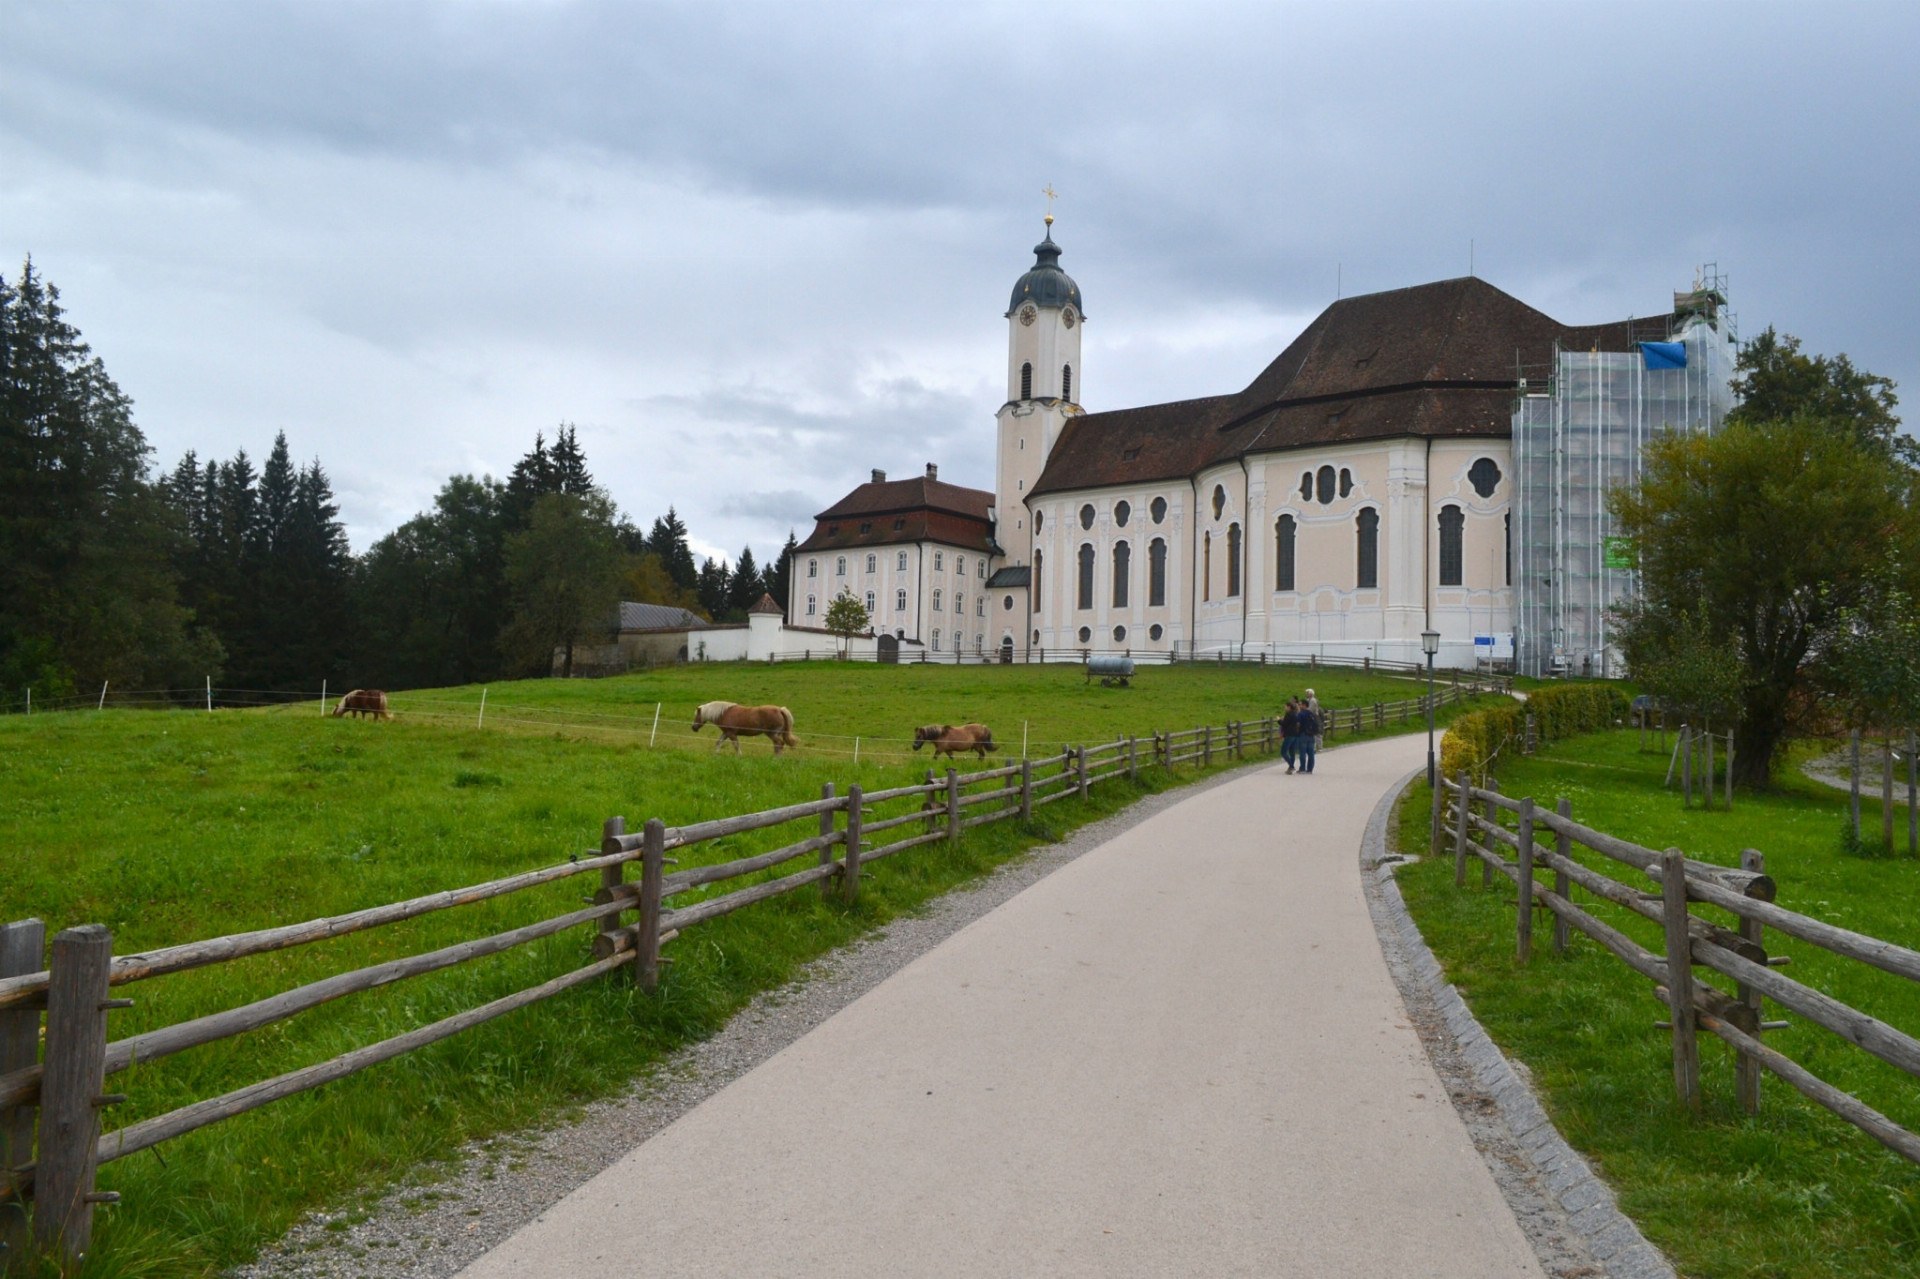 Taká veľká krajina ako je Nemecko skrýva celý rad tajomných miest. Tie čakajú iba na vaše objavenie. Spoznajte aspoň 16 najzaujímavejších spirituálnych oblastí. Navštívte napríklad kostol  Wieskirche v južnom Bavorsku. Táto rokoková pamiatka patrí na zoznam svetového dedičstva UNESCO.